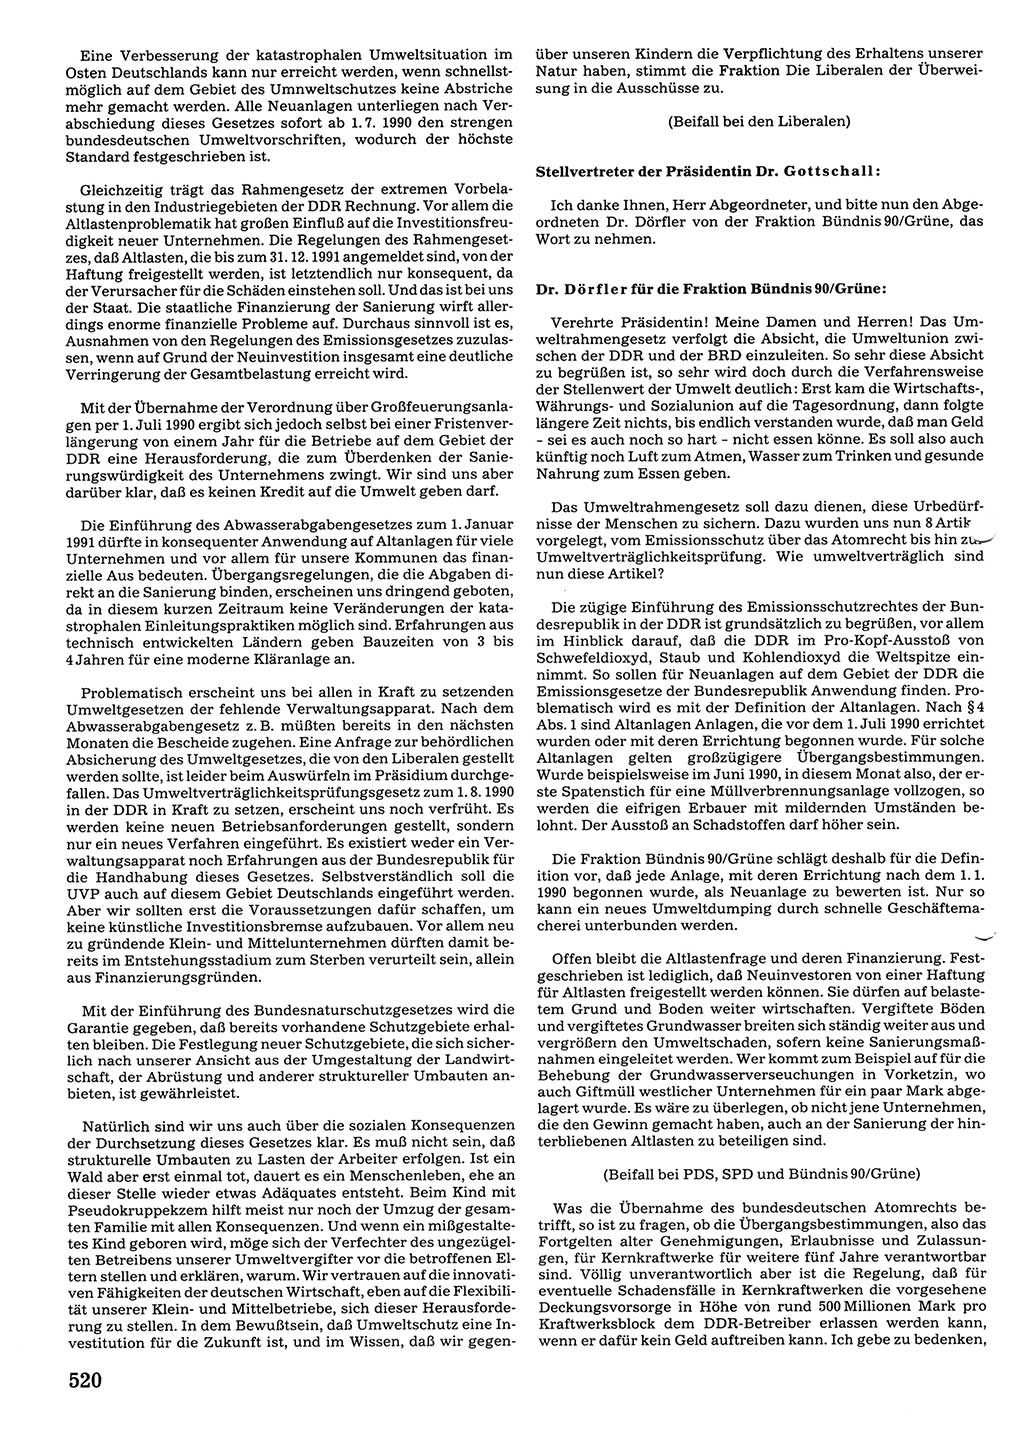 Tagungen der Volkskammer (VK) der Deutschen Demokratischen Republik (DDR), 10. Wahlperiode 1990, Seite 520 (VK. DDR 10. WP. 1990, Prot. Tg. 1-38, 5.4.-2.10.1990, S. 520)